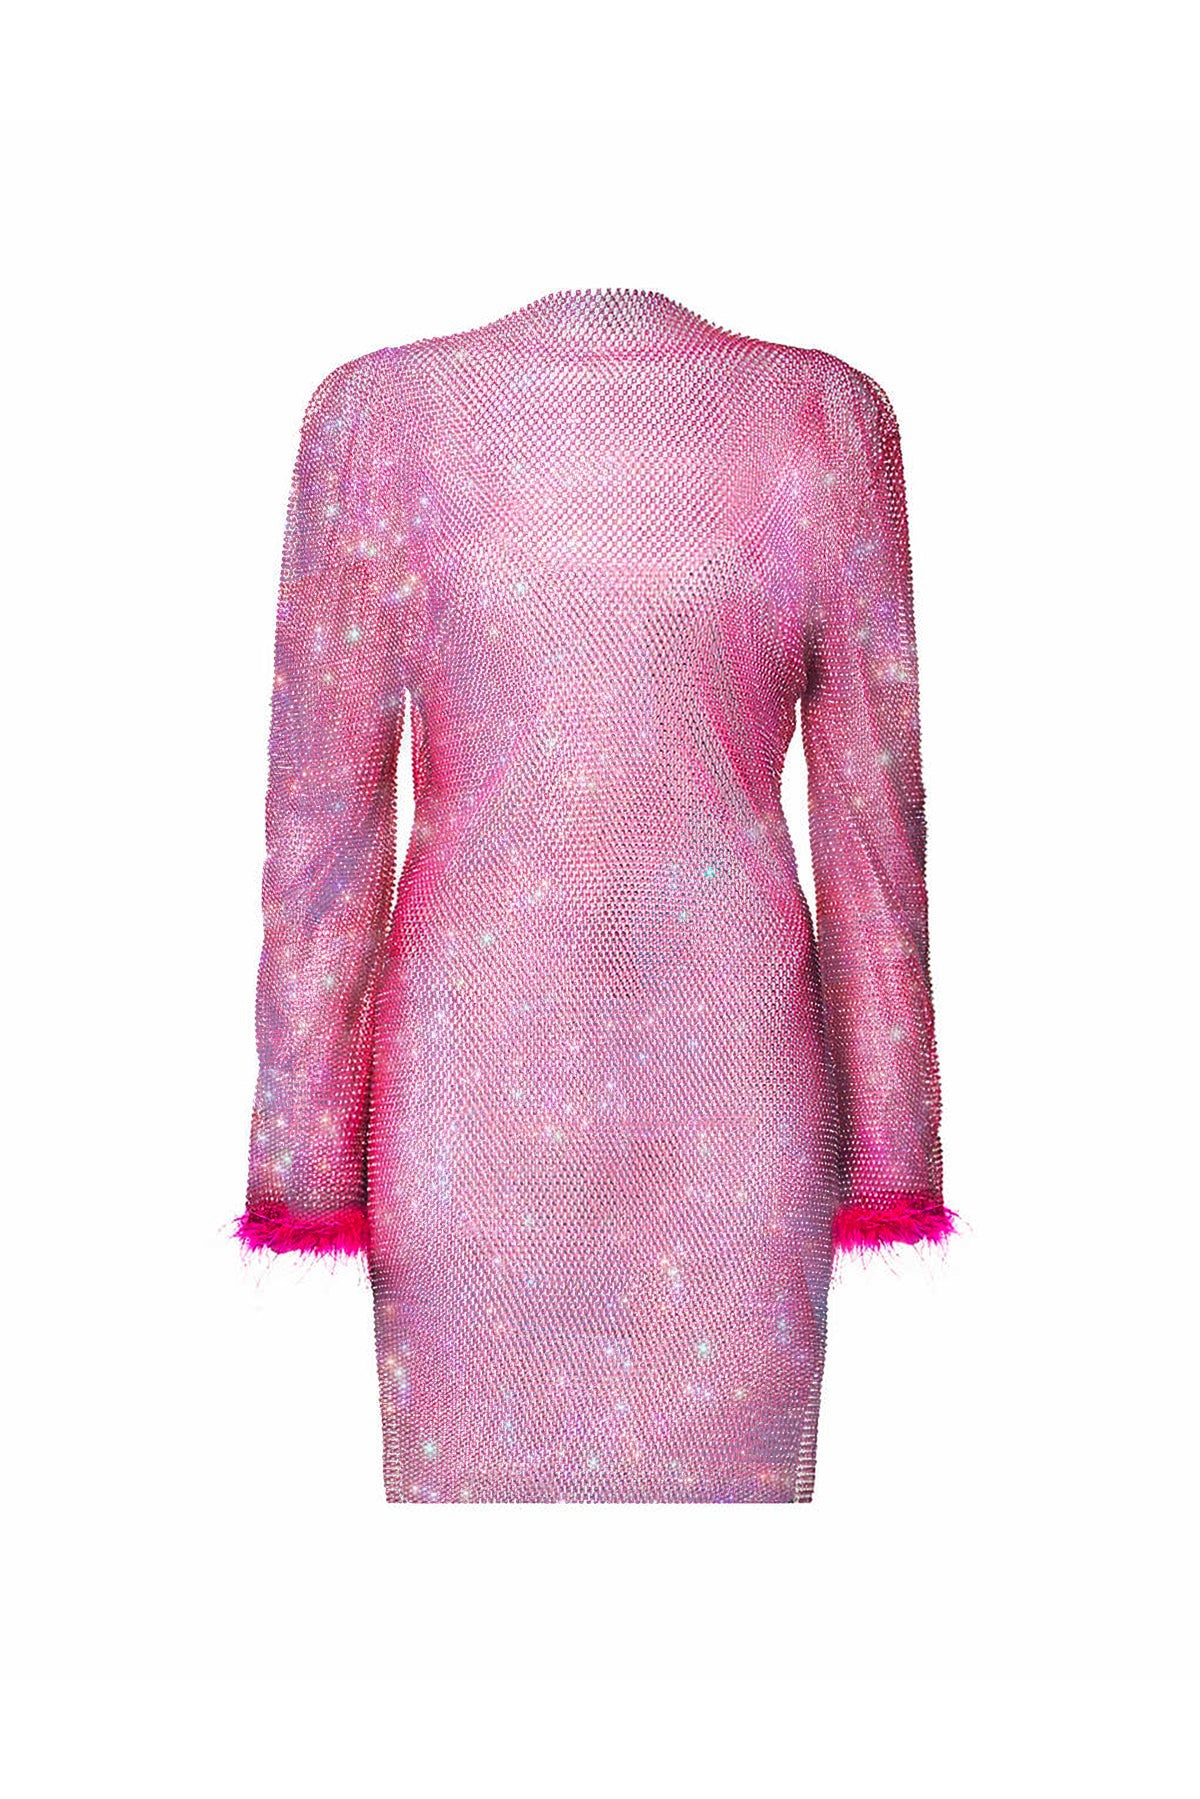 Women’s Pink / Purple Ida Pink Net Rhinestone Mini Dress M/L Amy Lynn